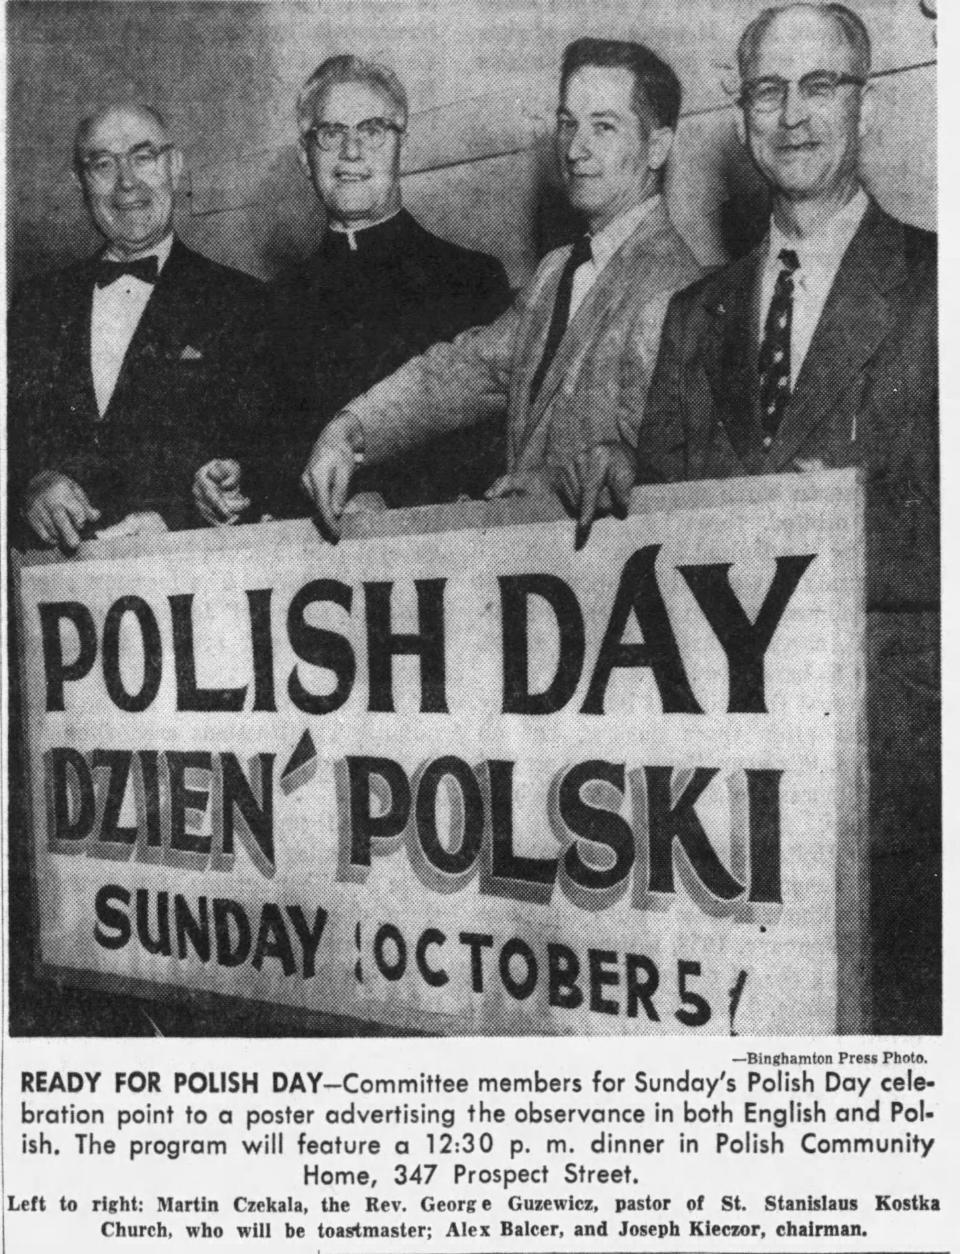 The 1958 Polish Day celebration held at the Polish Community Center with Martin Czekala, Rev. George Guzewicz, Alex Balcer and Joseph Kieczor.